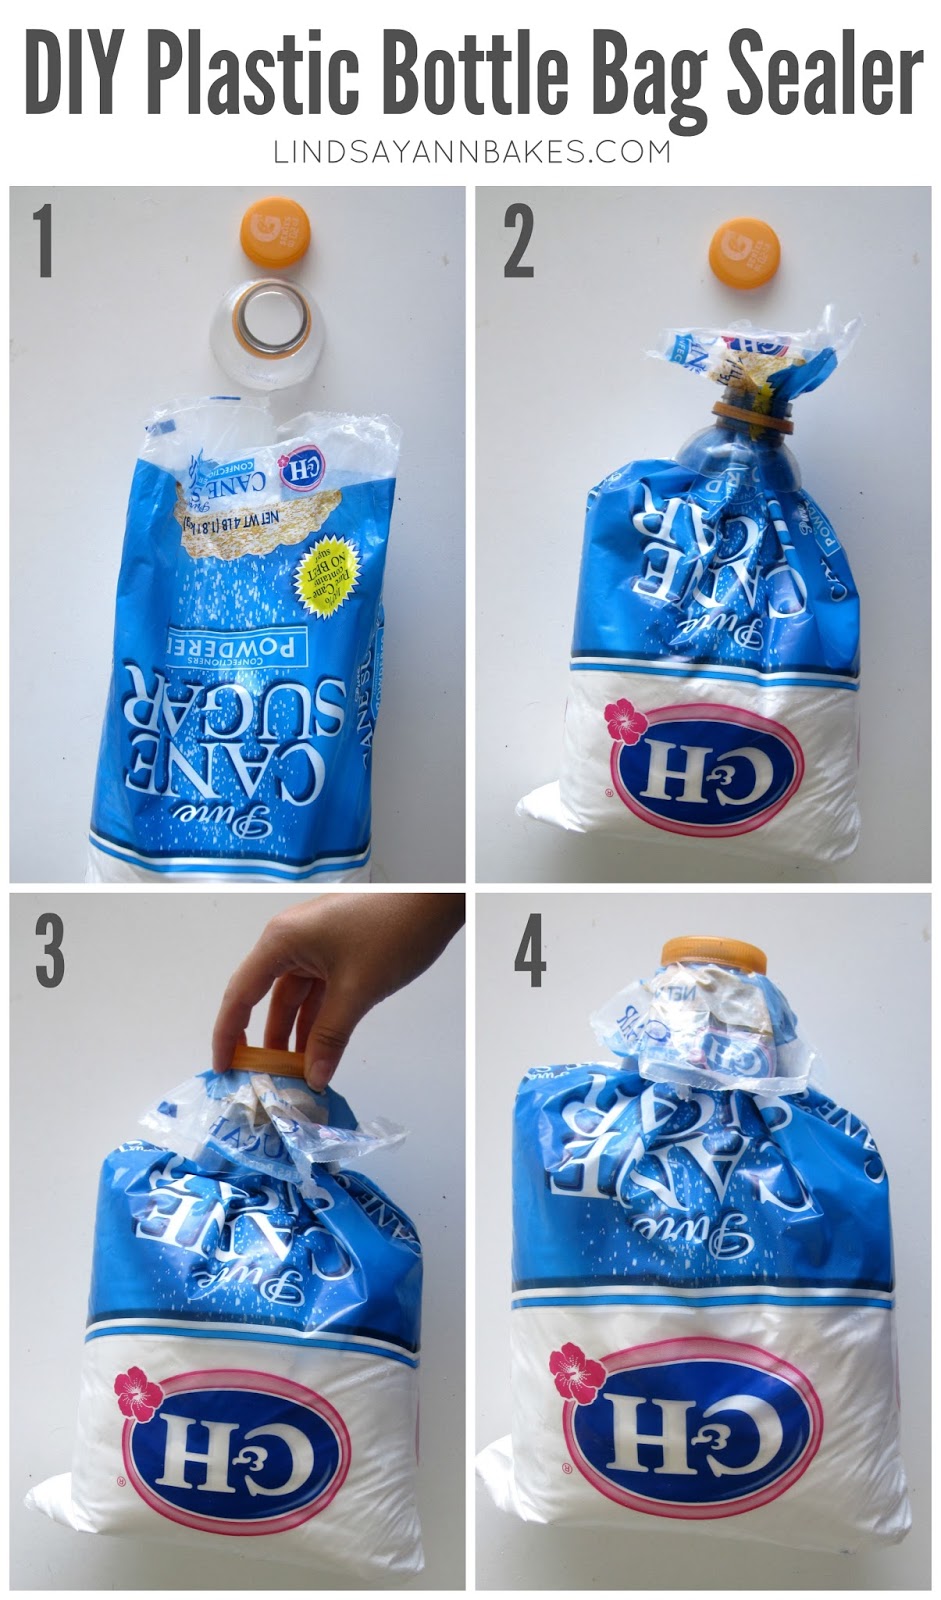 DIY Plastic Bottle Bag Sealer Lindsay Ann Bakes